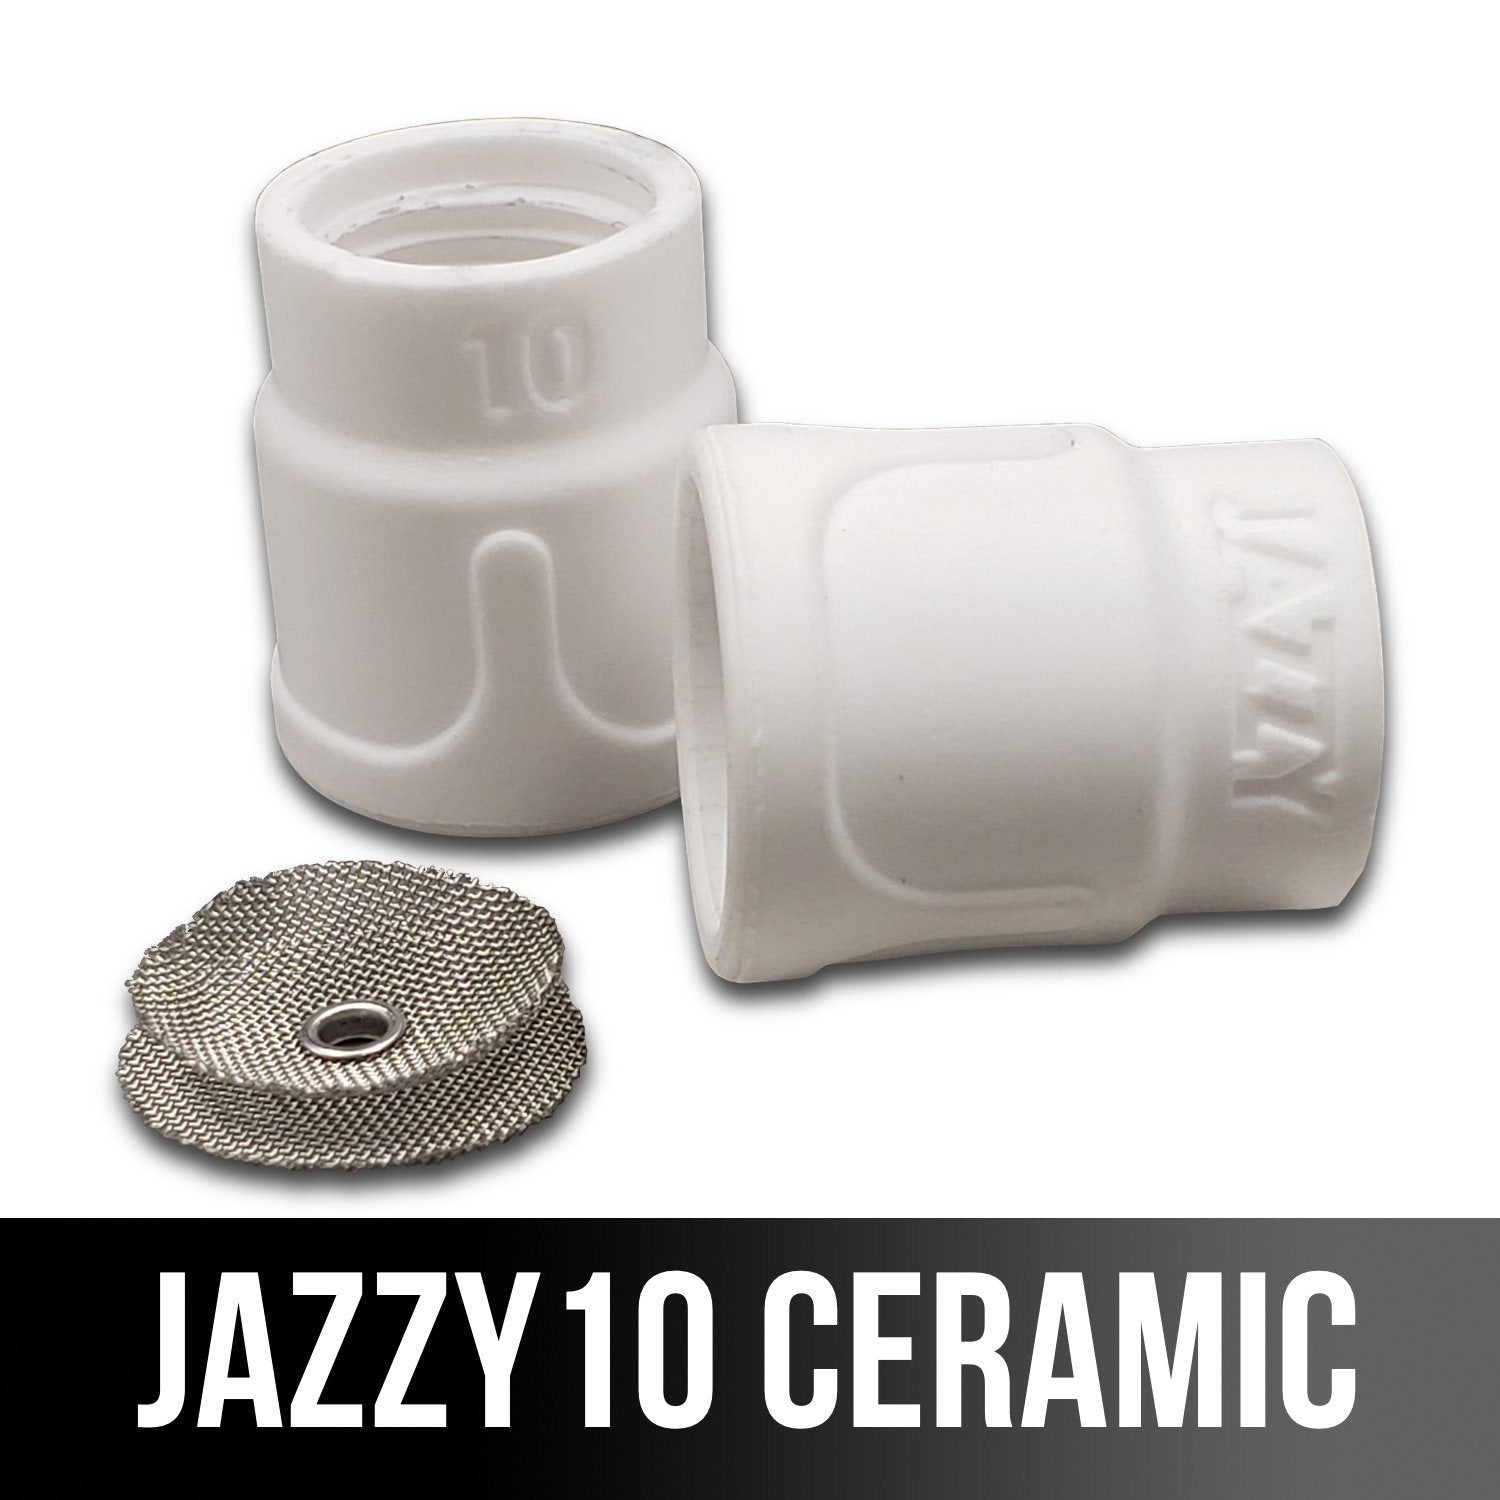 Furick Jazzy 10 Ceramic Welding Cup Kit Weldmonger Welding Supply Weldmonger Store